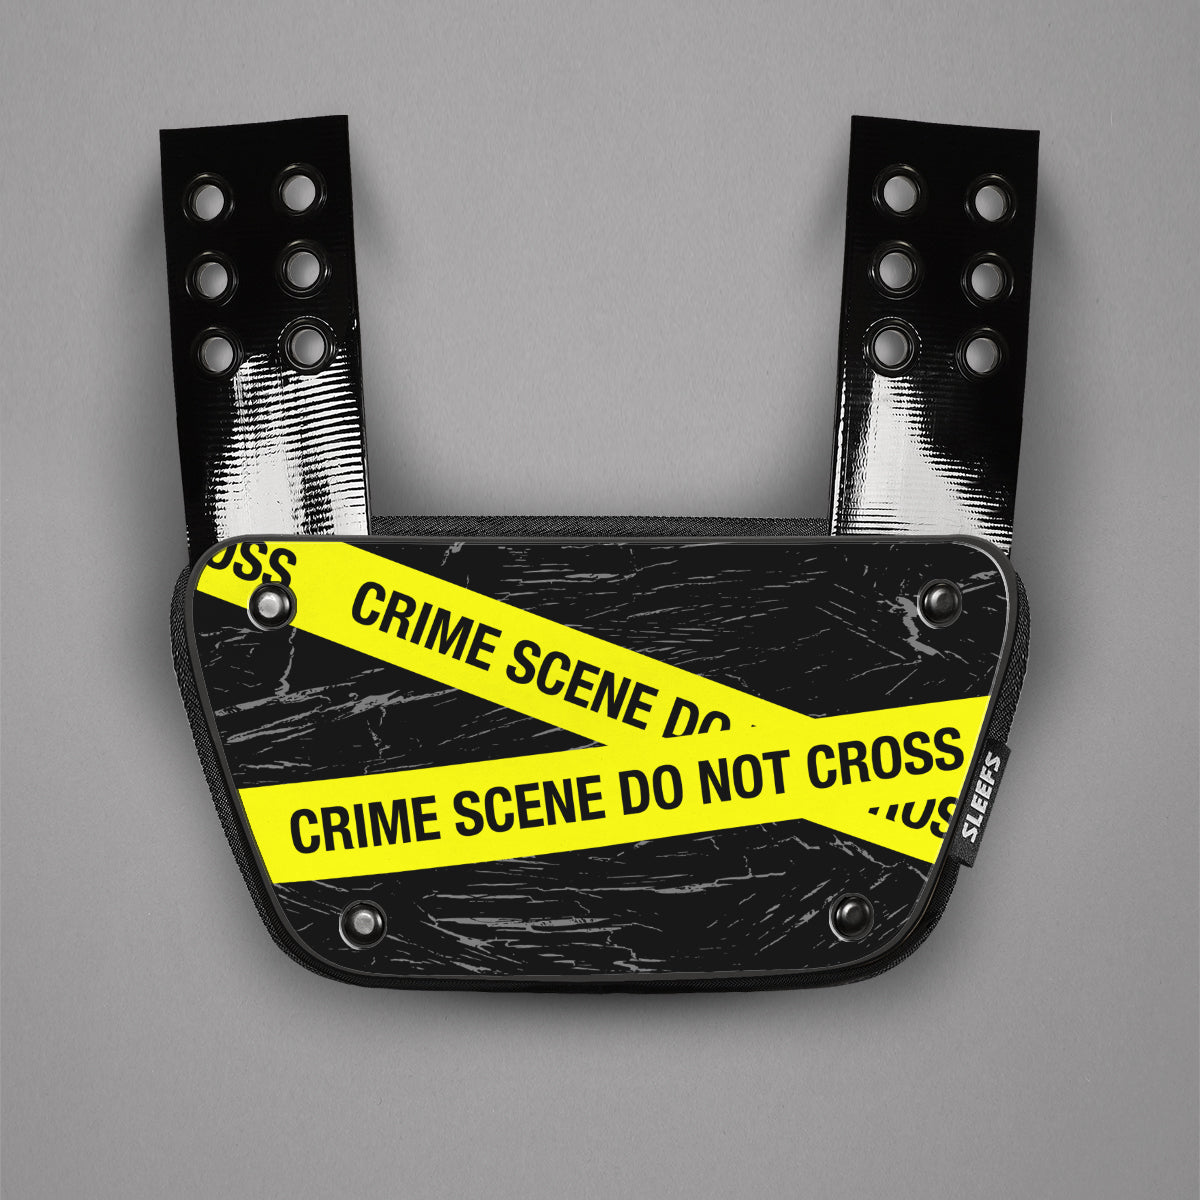 Crime Scene Sticker for Back Plate